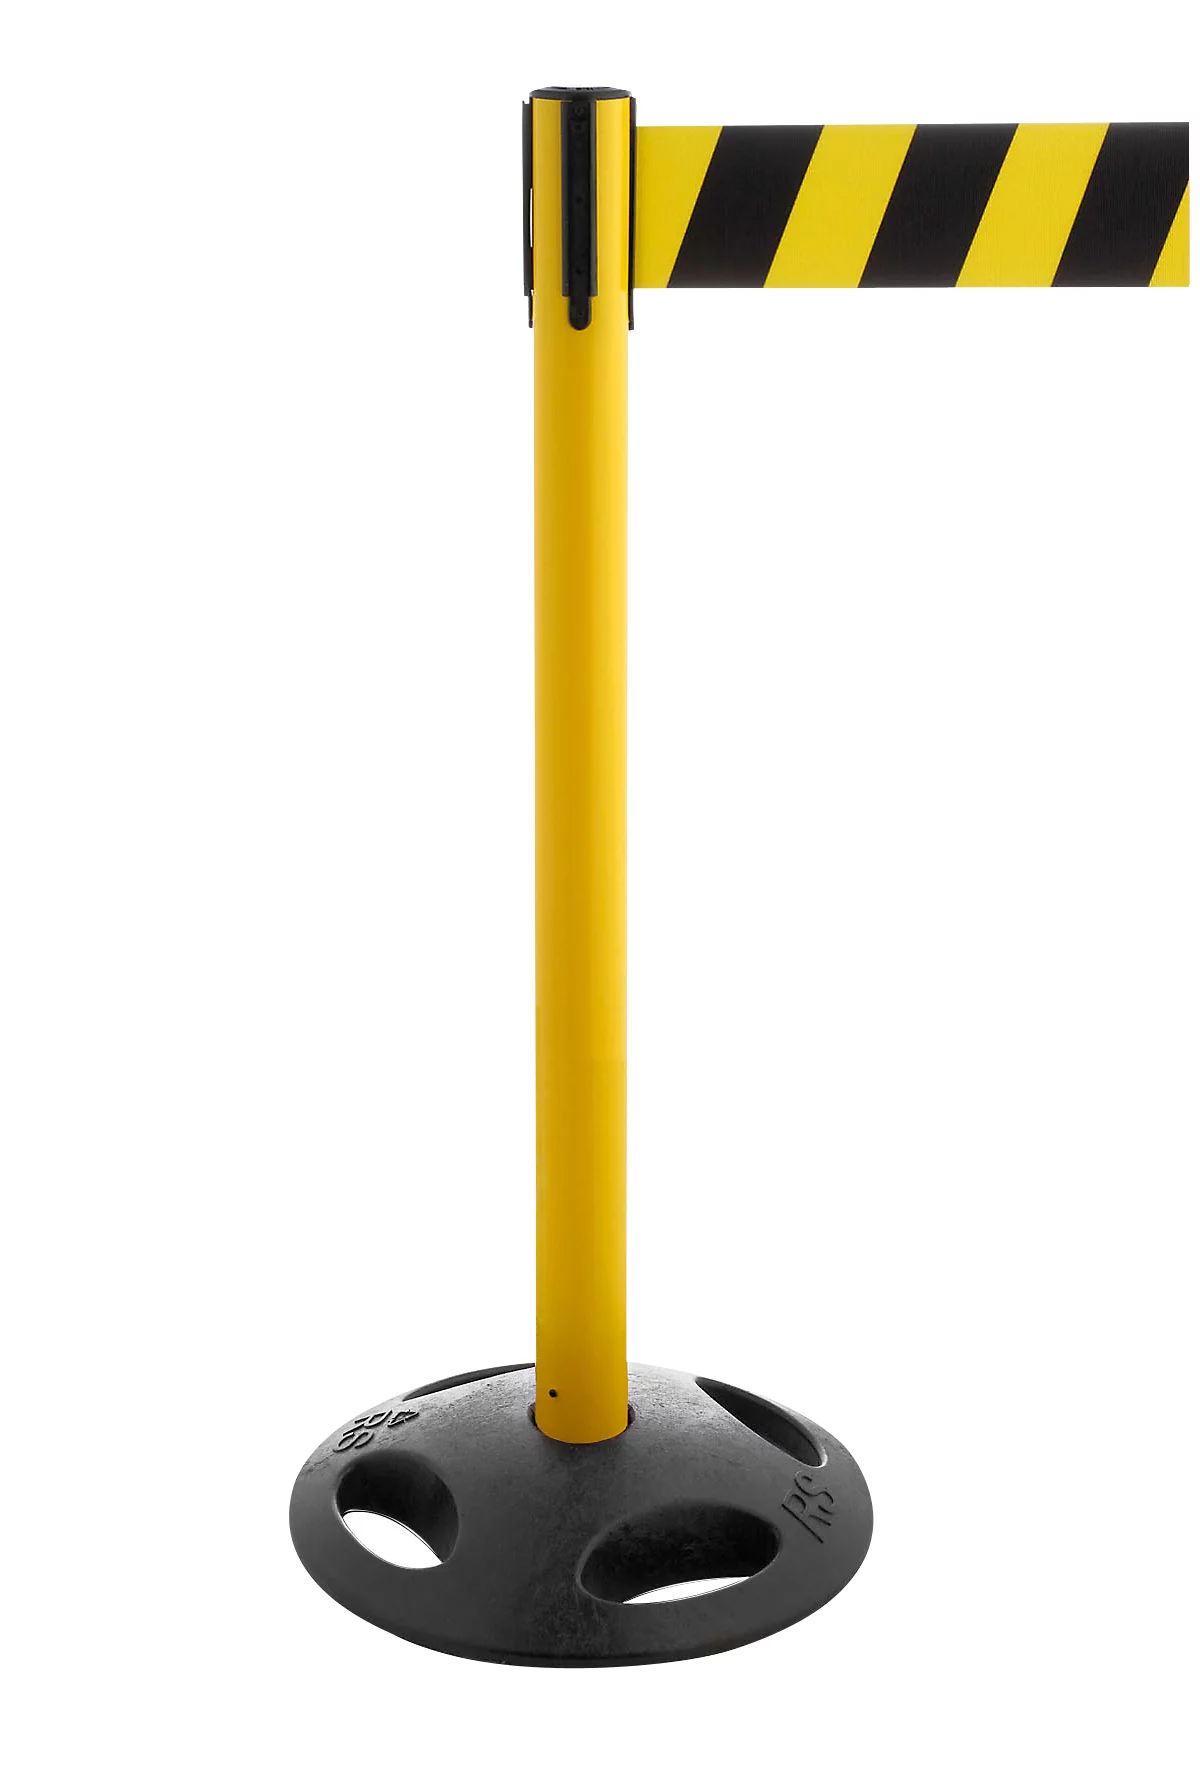 Poste delimitador RS-Guidesystems GLA 26, amarillo, cinta negro/amarillo, 2 unidades